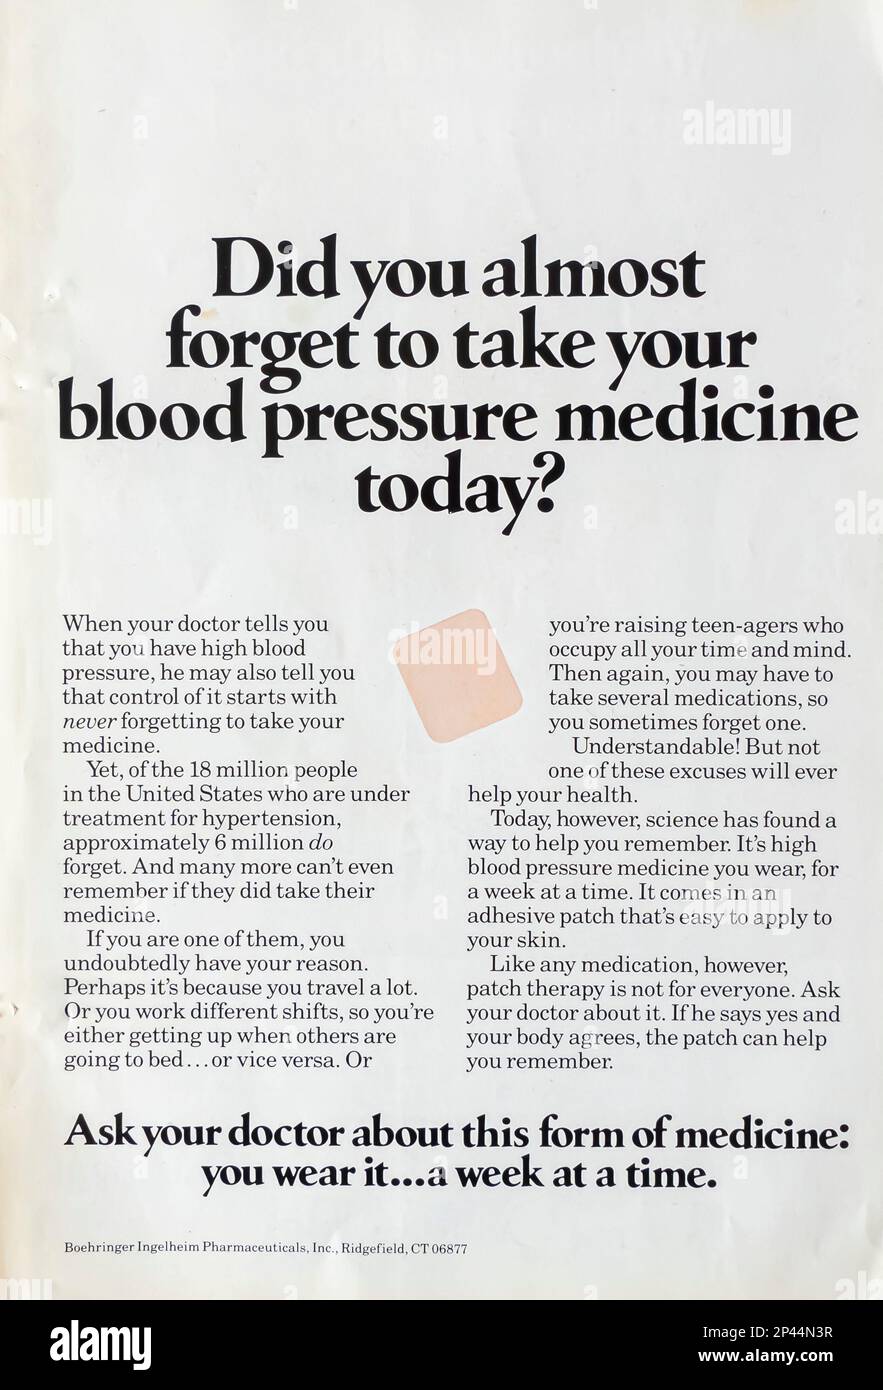 Boehringer Ingelheim annonce d'une société pharmaceutique dans un magazine NatGeo février 1988 Banque D'Images